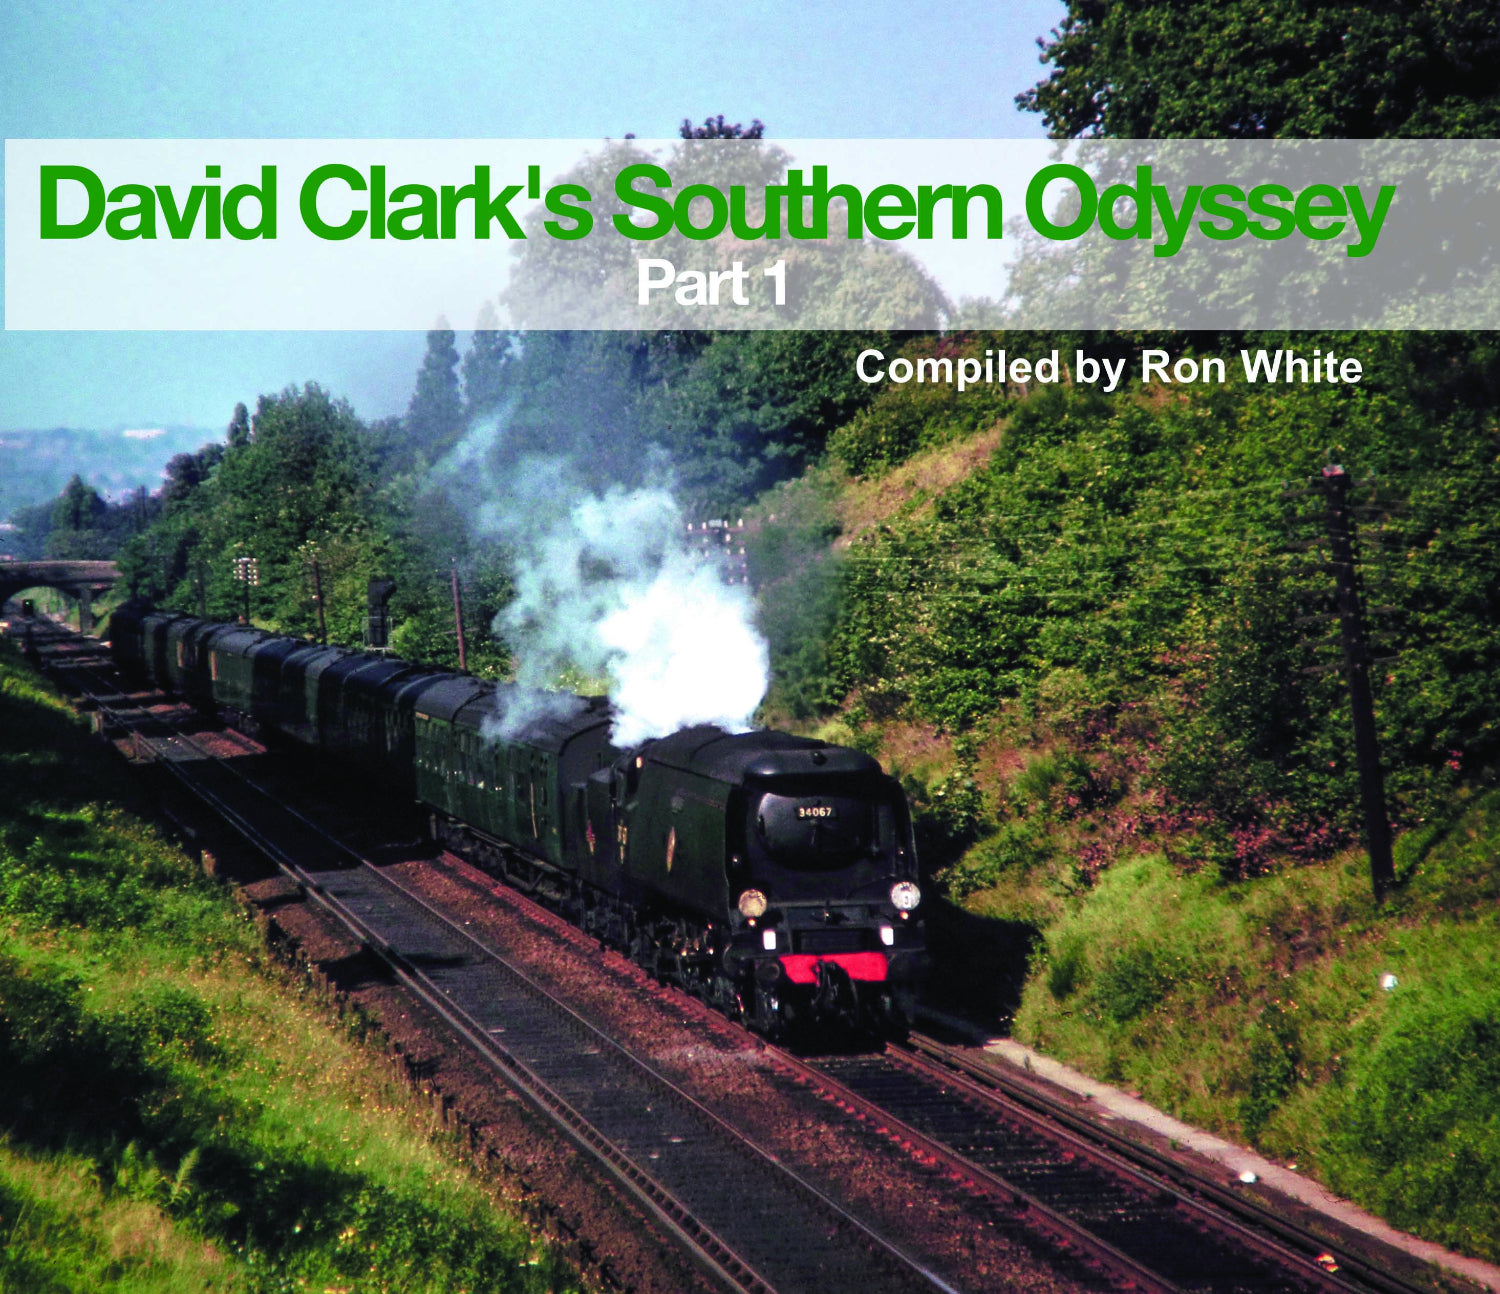 David Clark’s Southern Odyssey Part 1